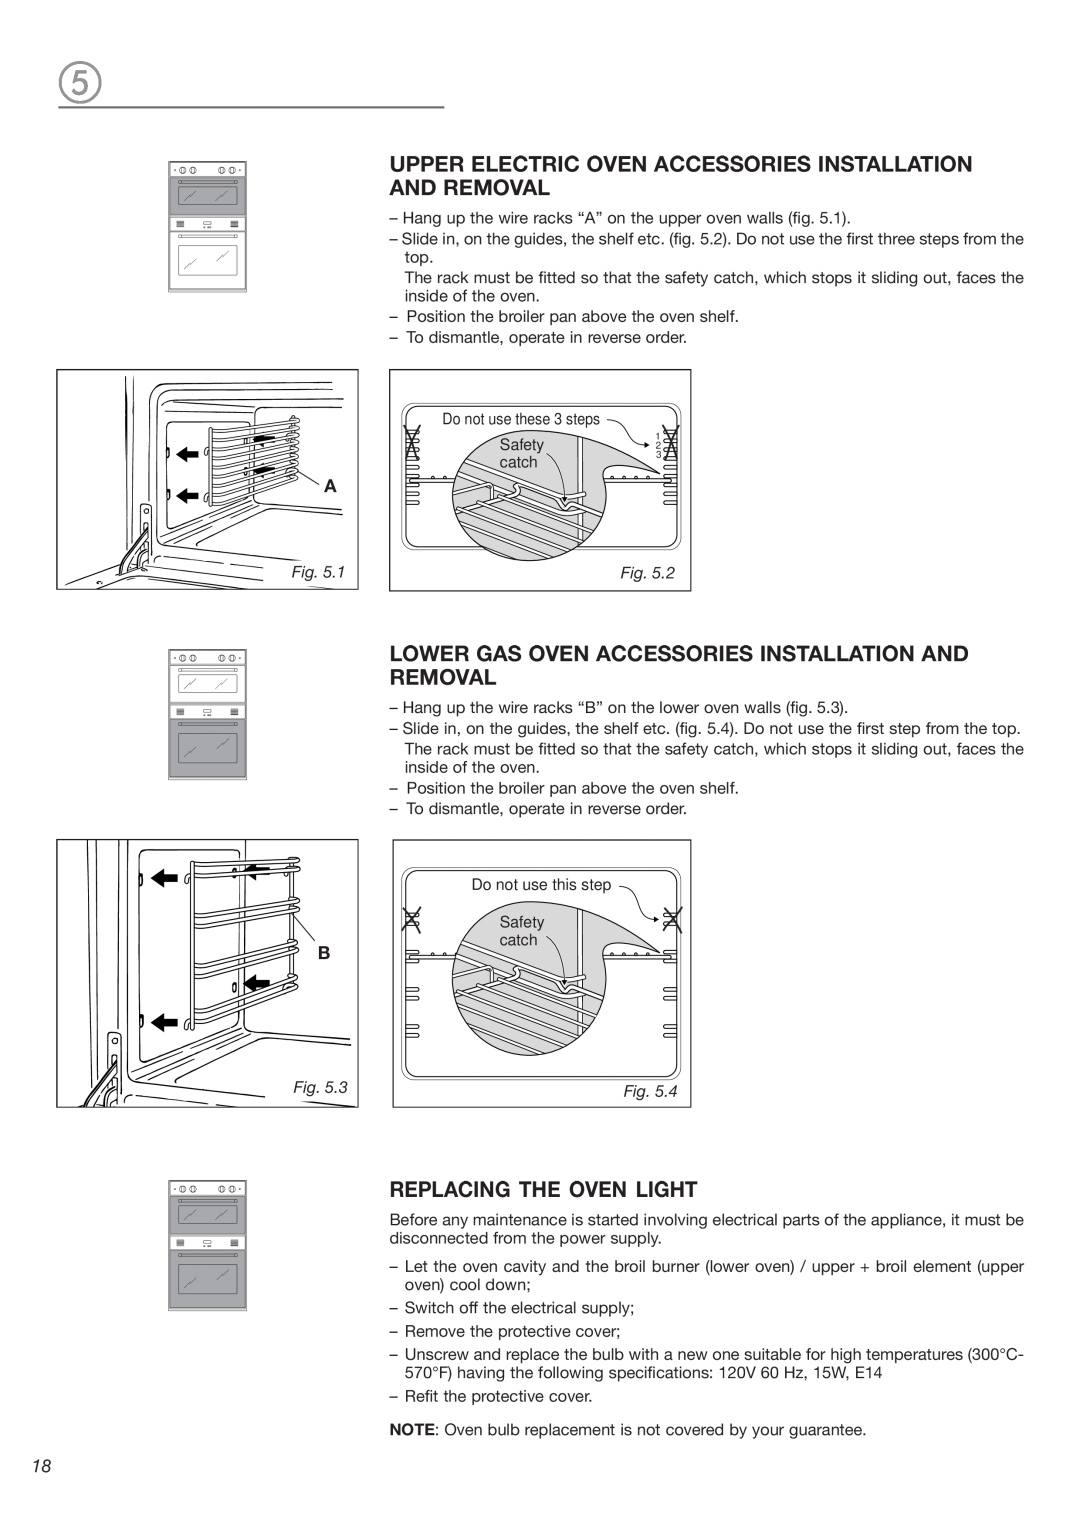 DeLonghi DEBIGE 2440 W, DEBIGE 2440 SS, DEBIGE 2440 E warranty Replacing The Oven Light 